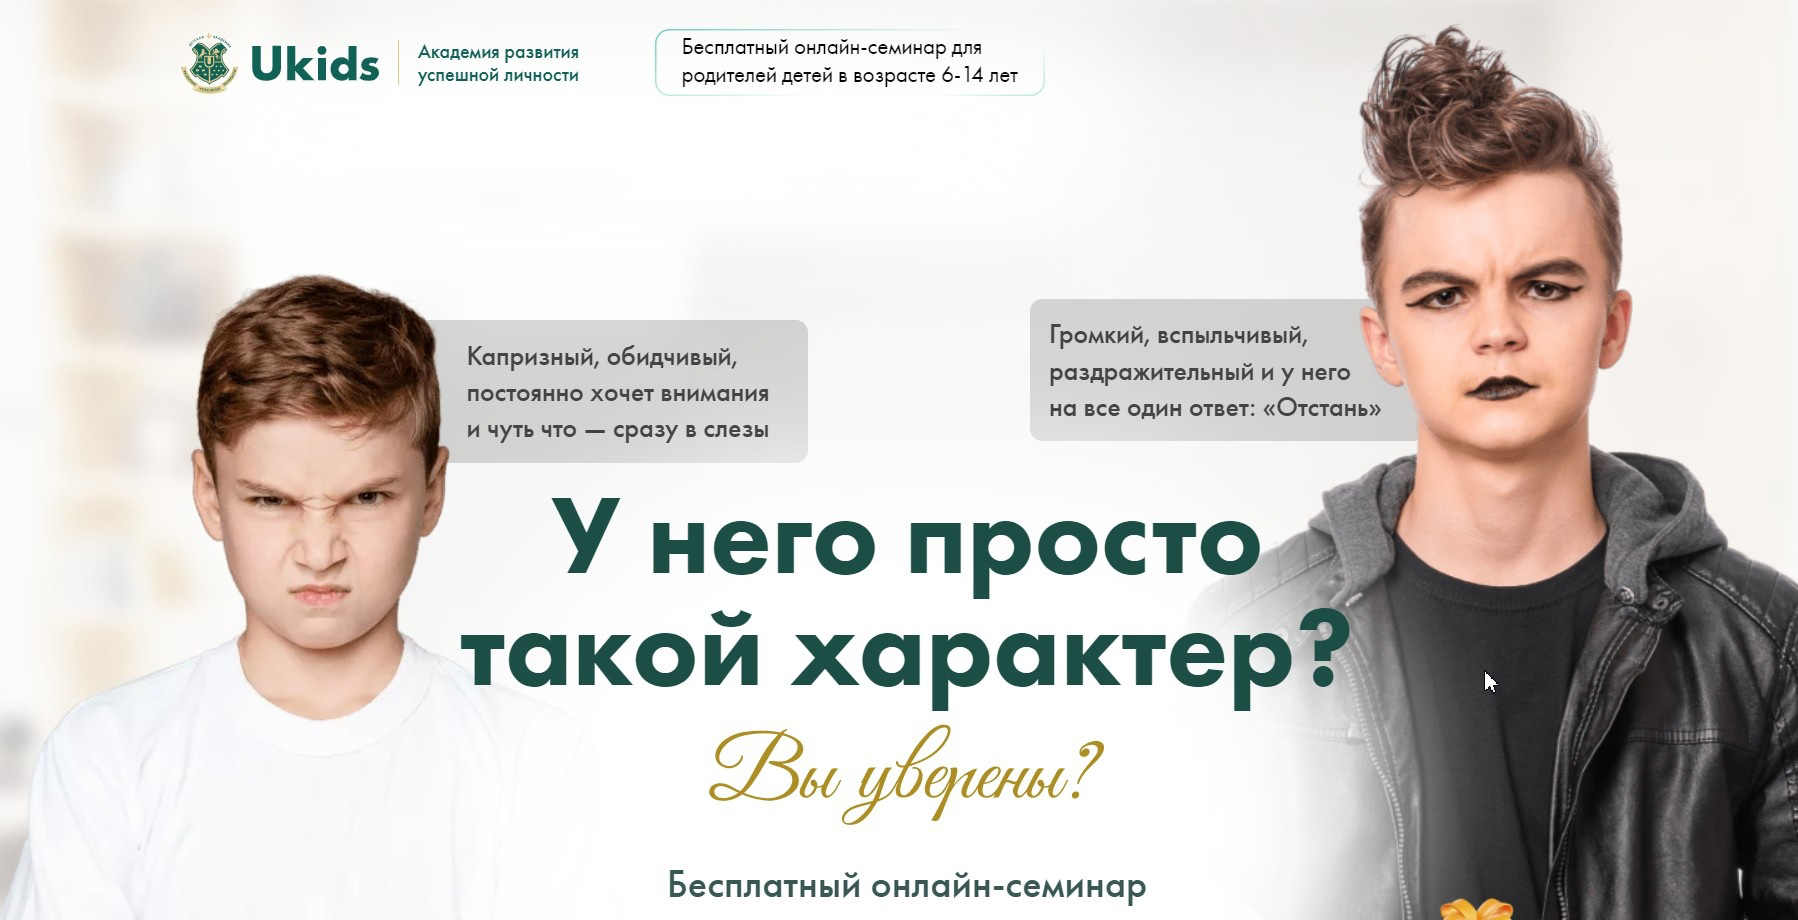 Всероссийский онлайн-семинар для родителей.